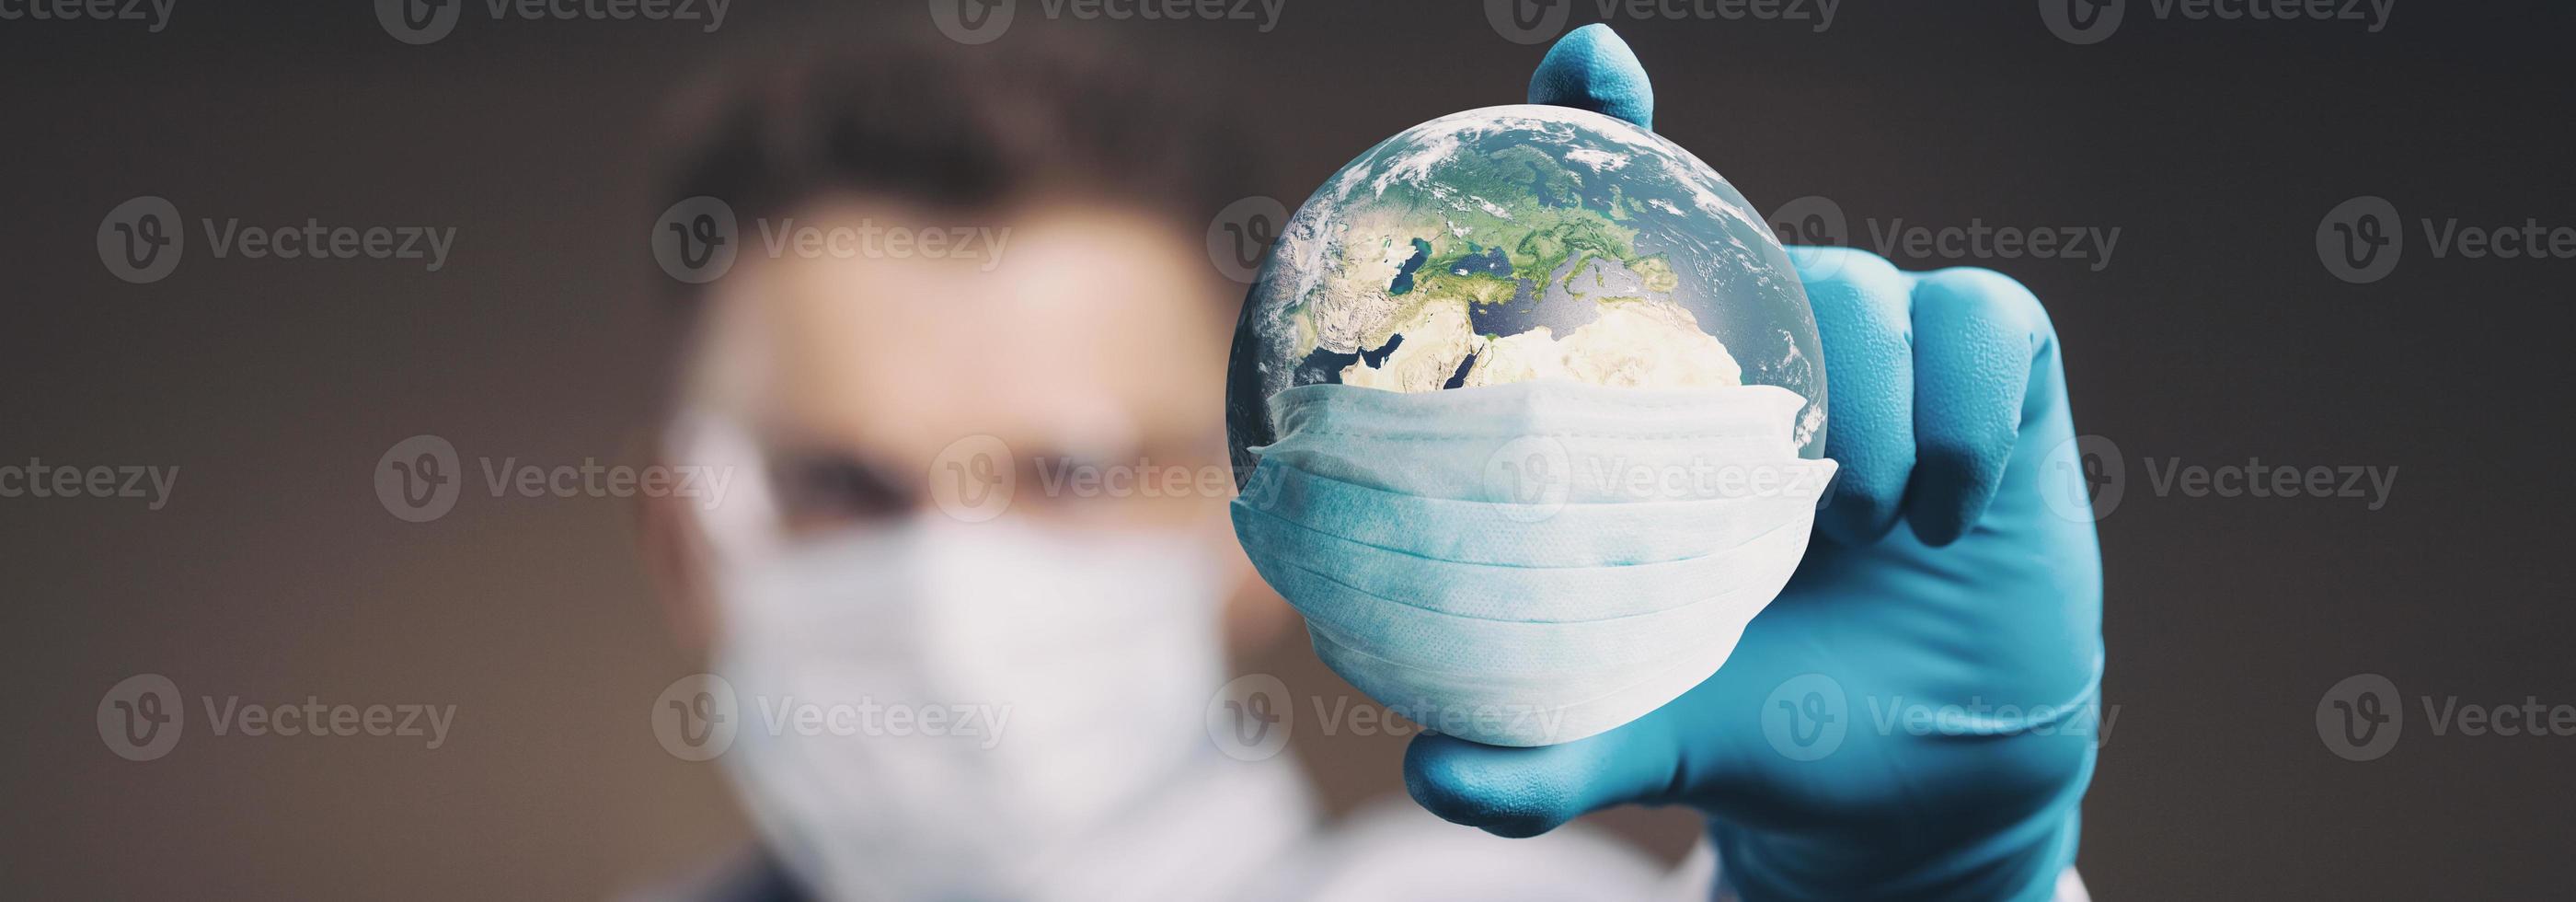 Der Planet Erde trägt eine Schutzmaske. 3D-Darstellung foto